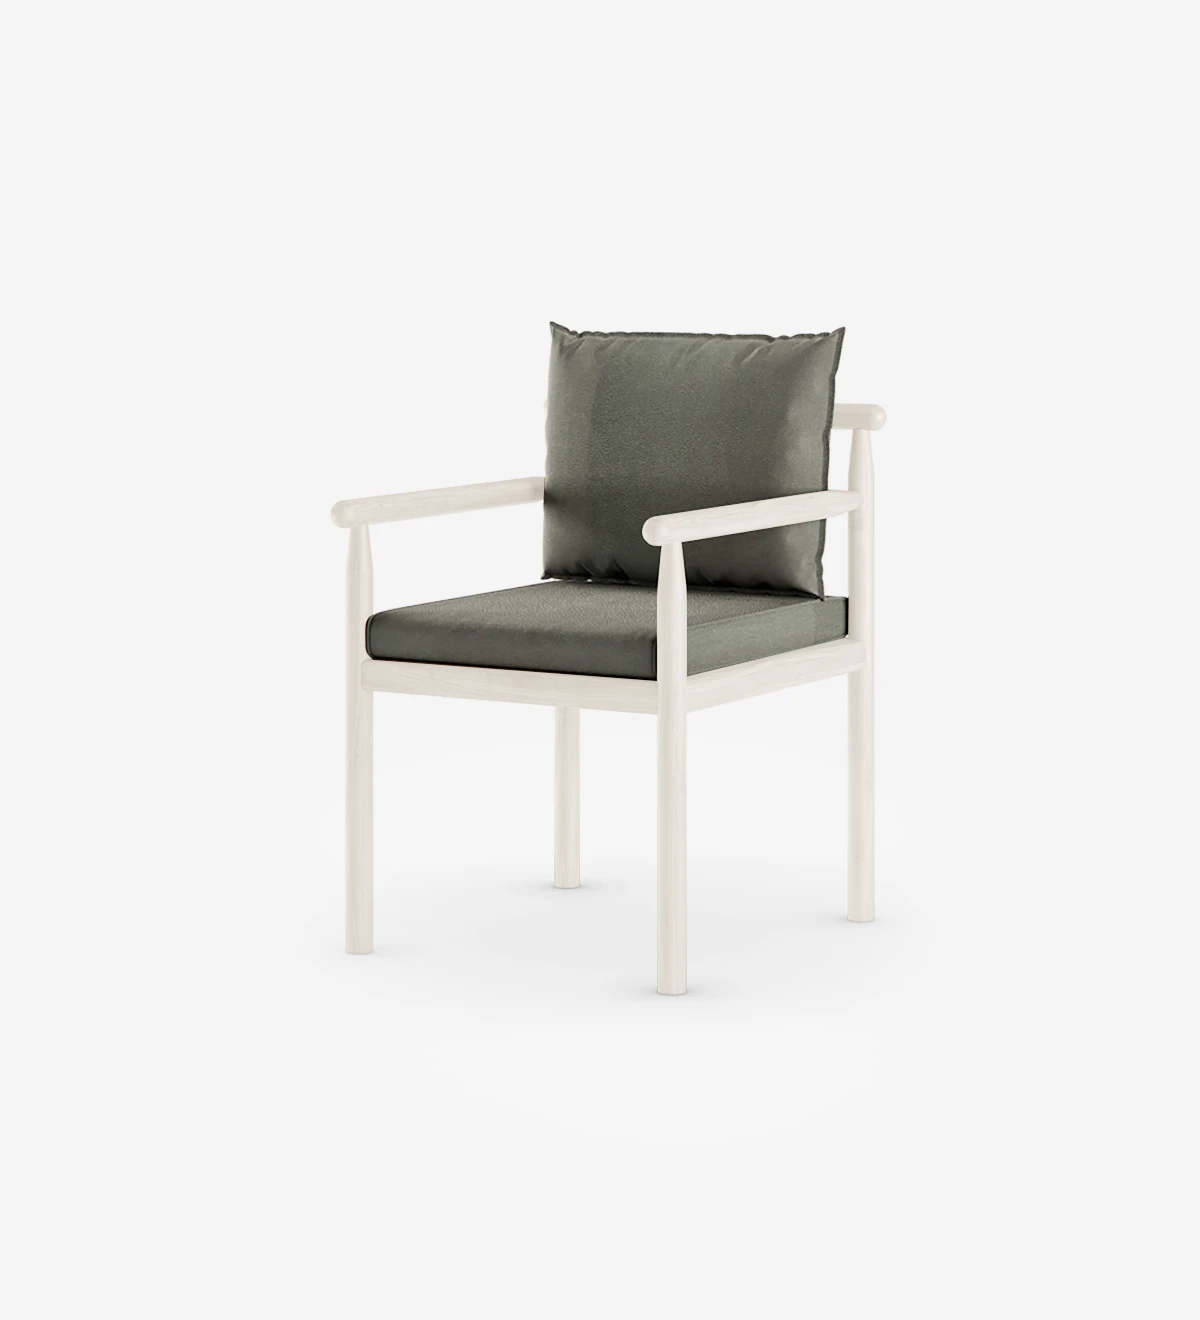 Cadeira com braços, almofadas estofadas a tecido e estrutura lacado pérola.